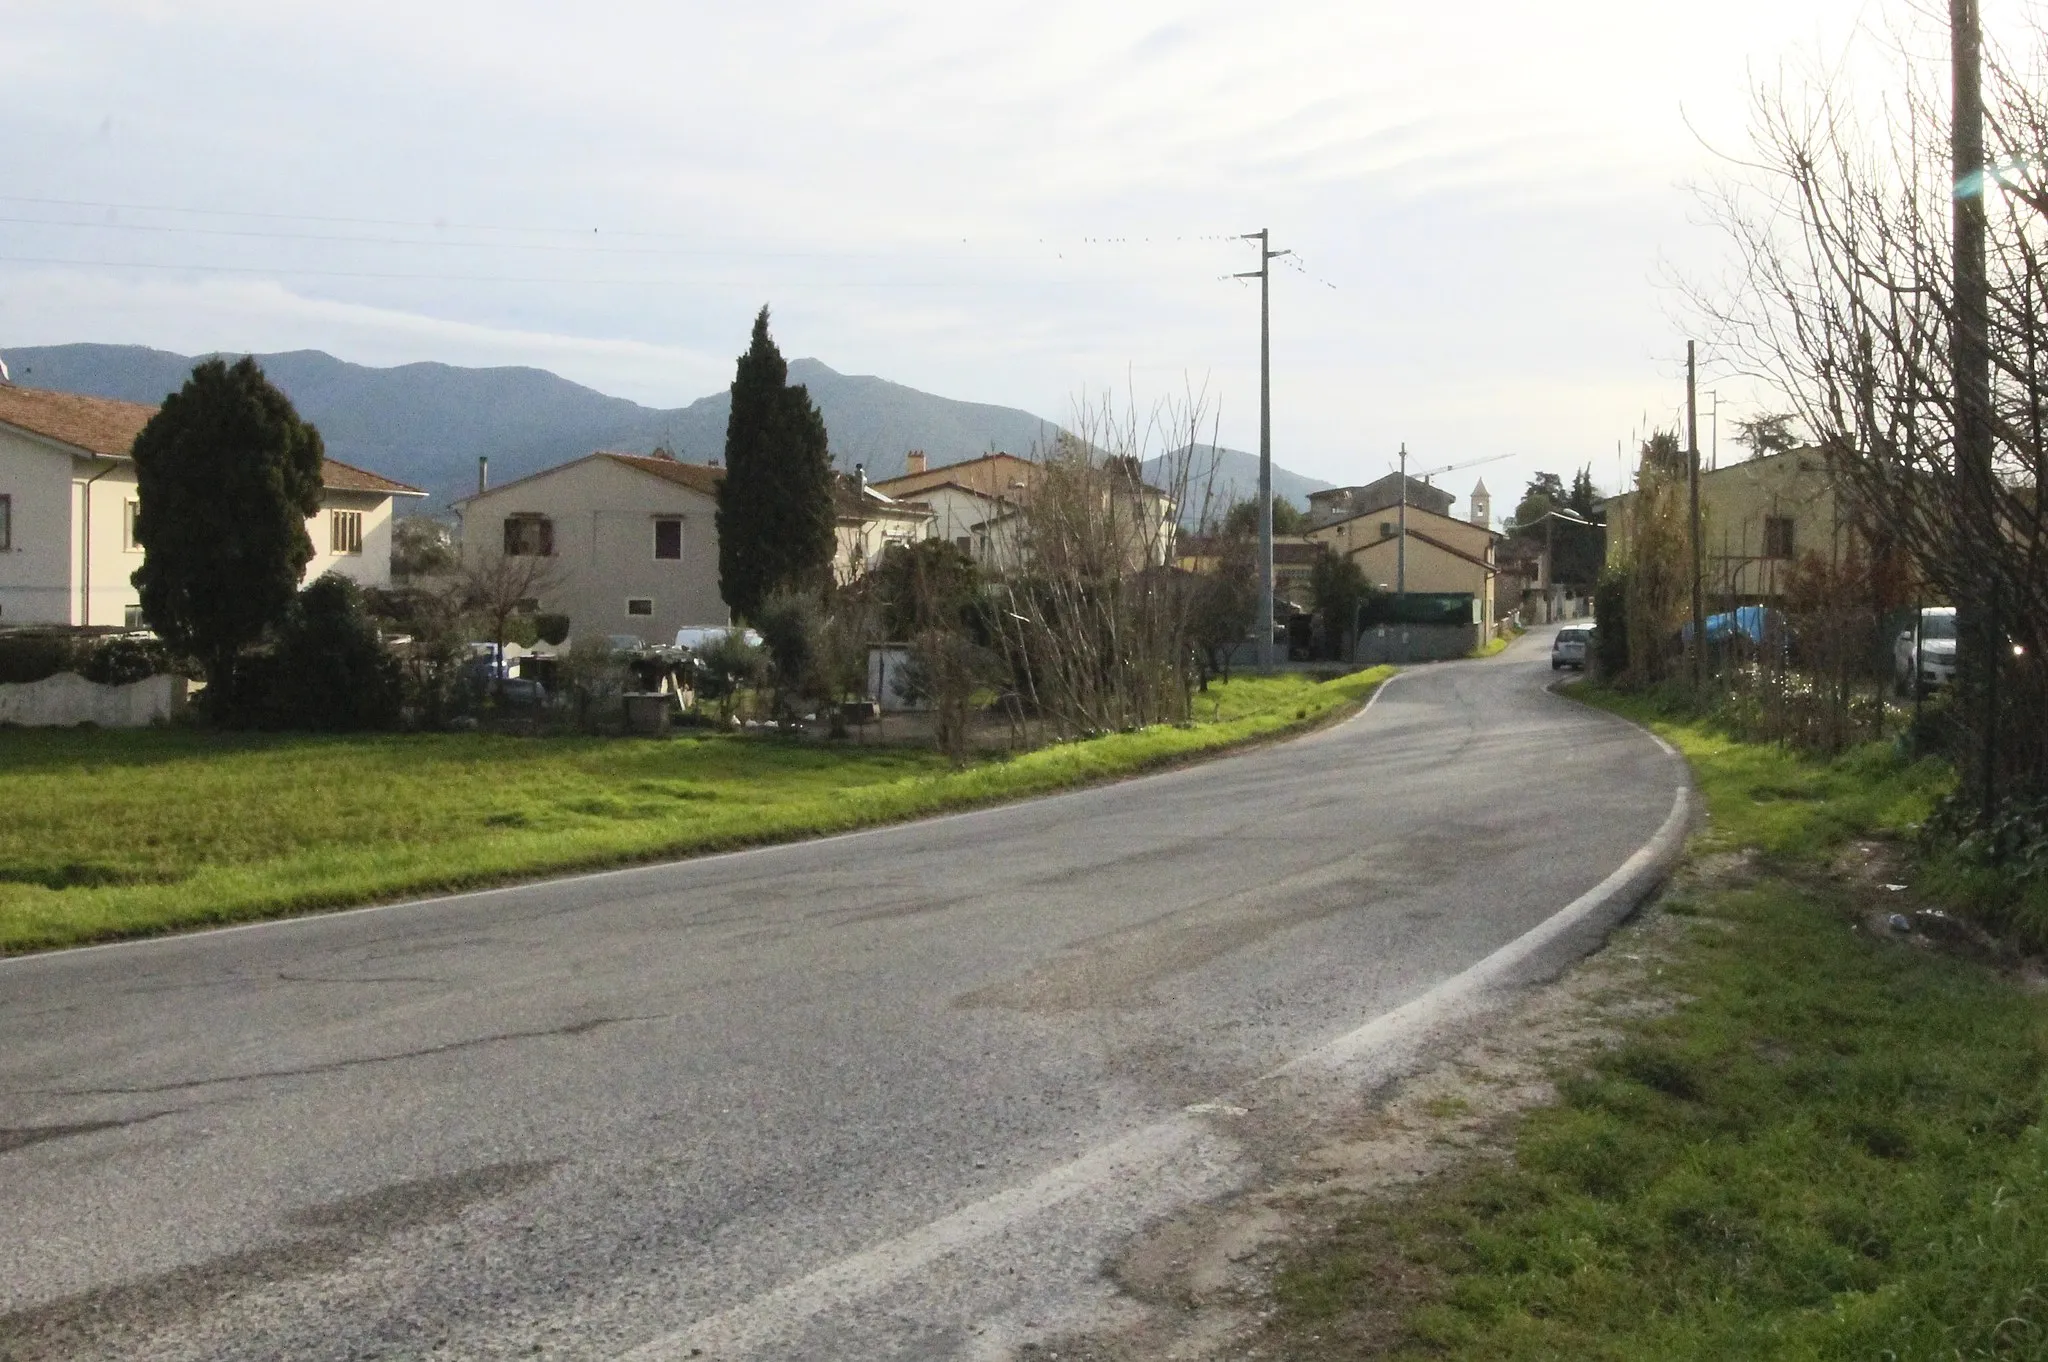 Photo showing: Campo, hamlet of San Giuliano Terme, Province of Pisa, Tuscany, Italy